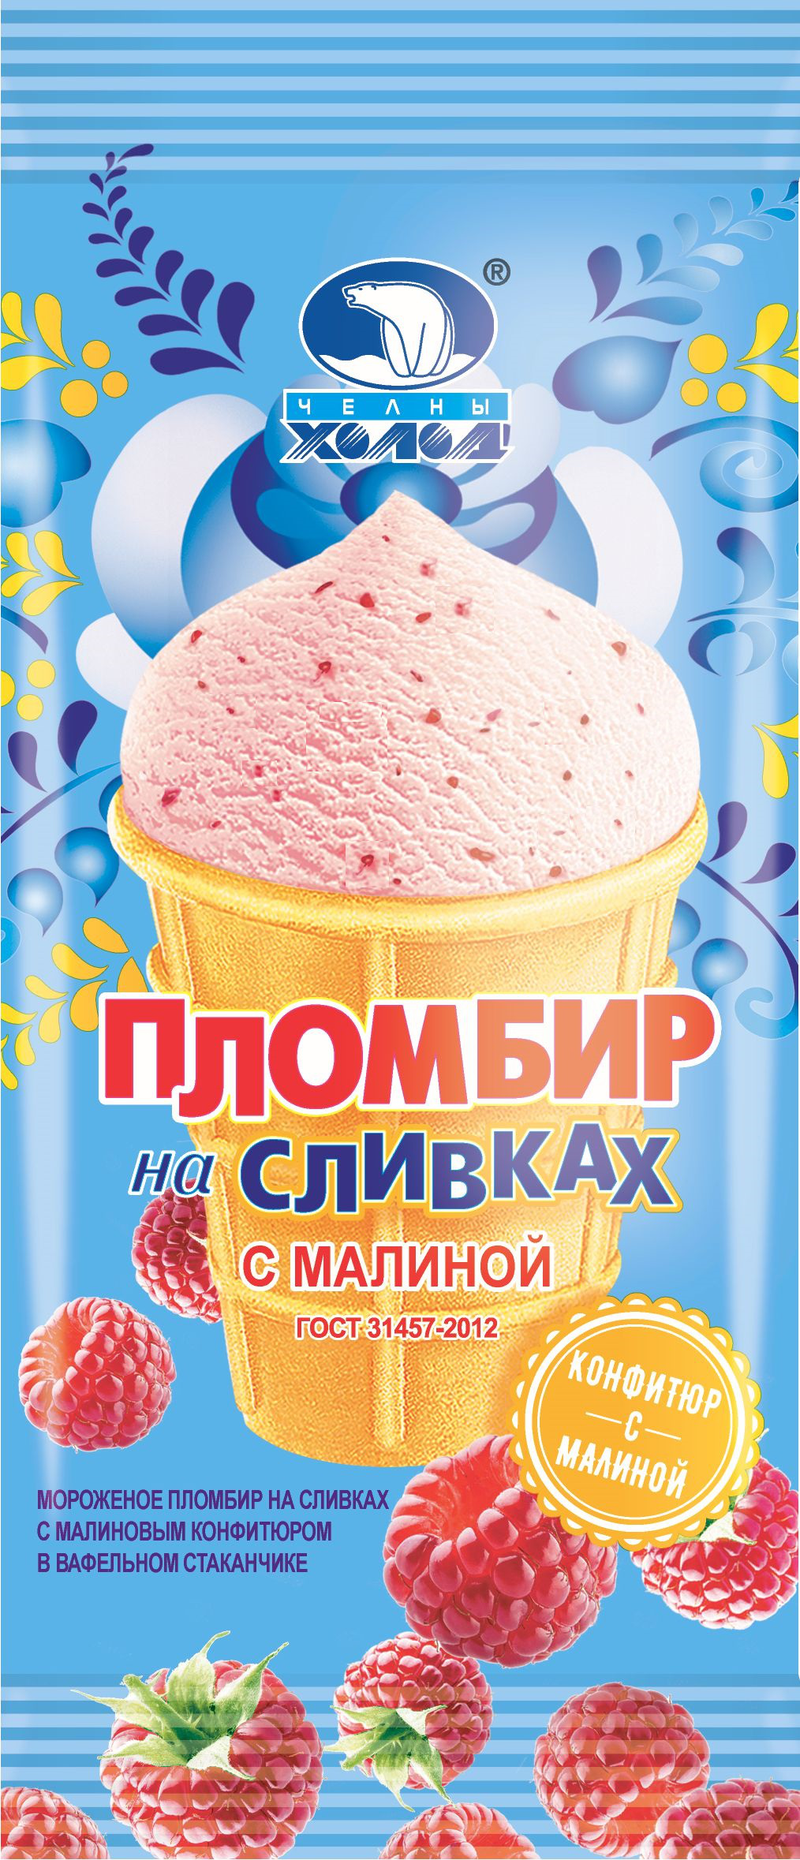  Мороженое Пломбир на сливках с малиновым конфитюром ваф.ст.90г Челны Холод БЗМЖ 827 